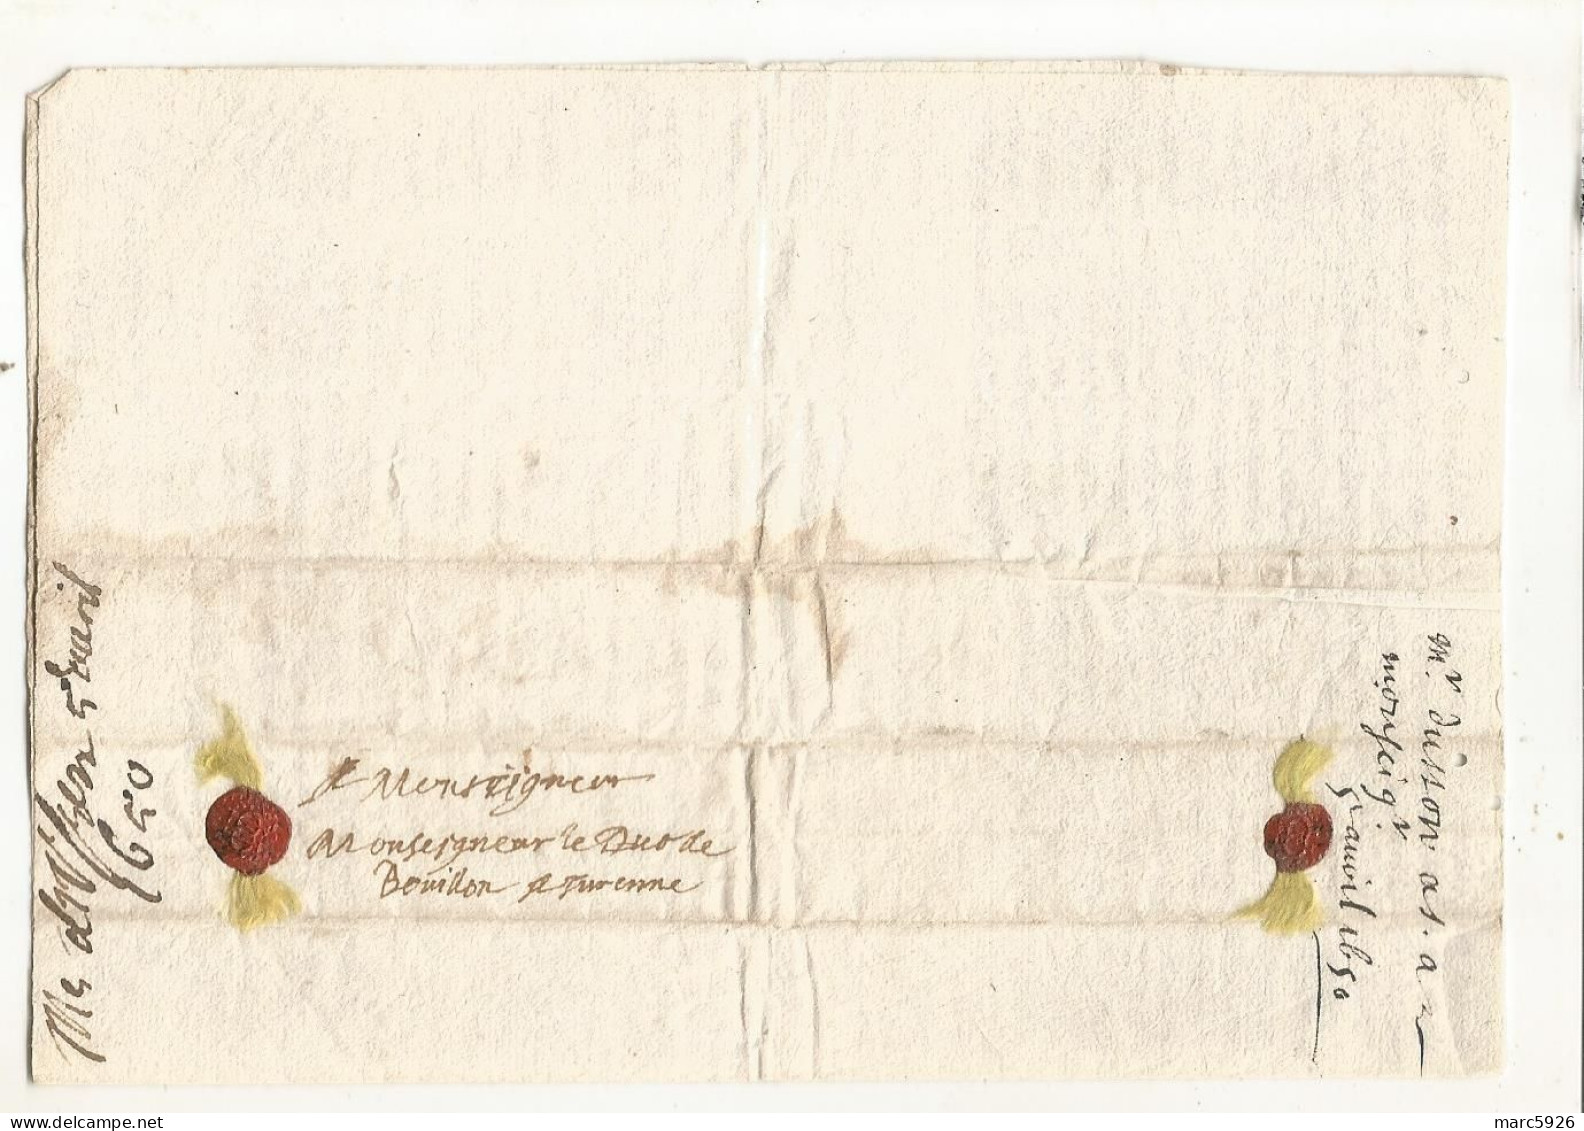 N°2036 ANCIENNE LETTRE AU DUC DE BOUILLON A TURENNE AVEC CACHET DE CIRE ET RUBAN DATE 1650 - Historische Documenten